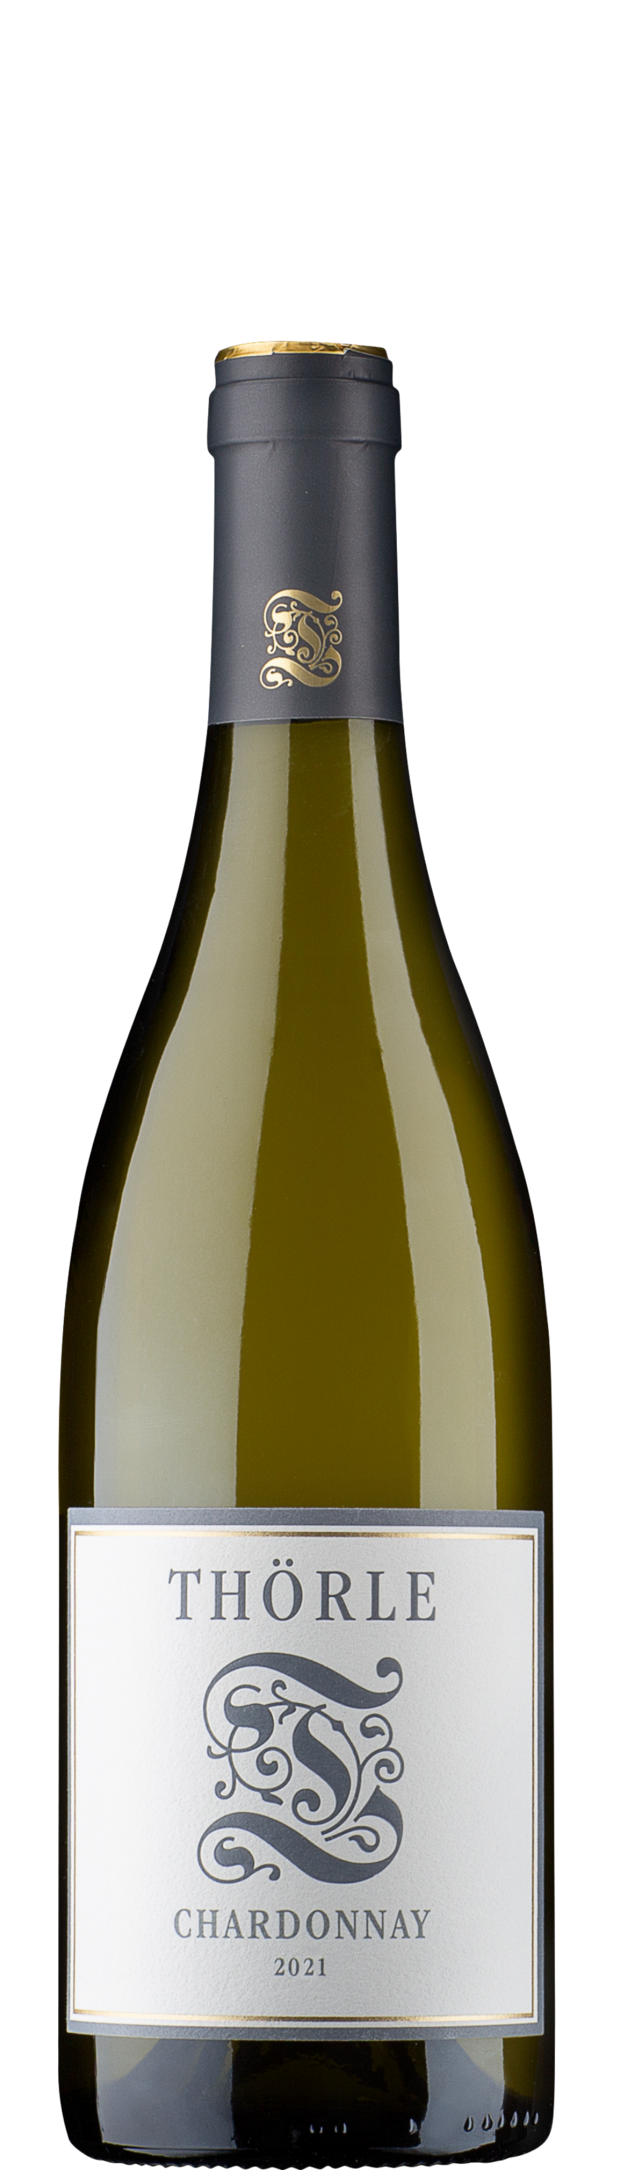 Chardonnay - Thörle 2021